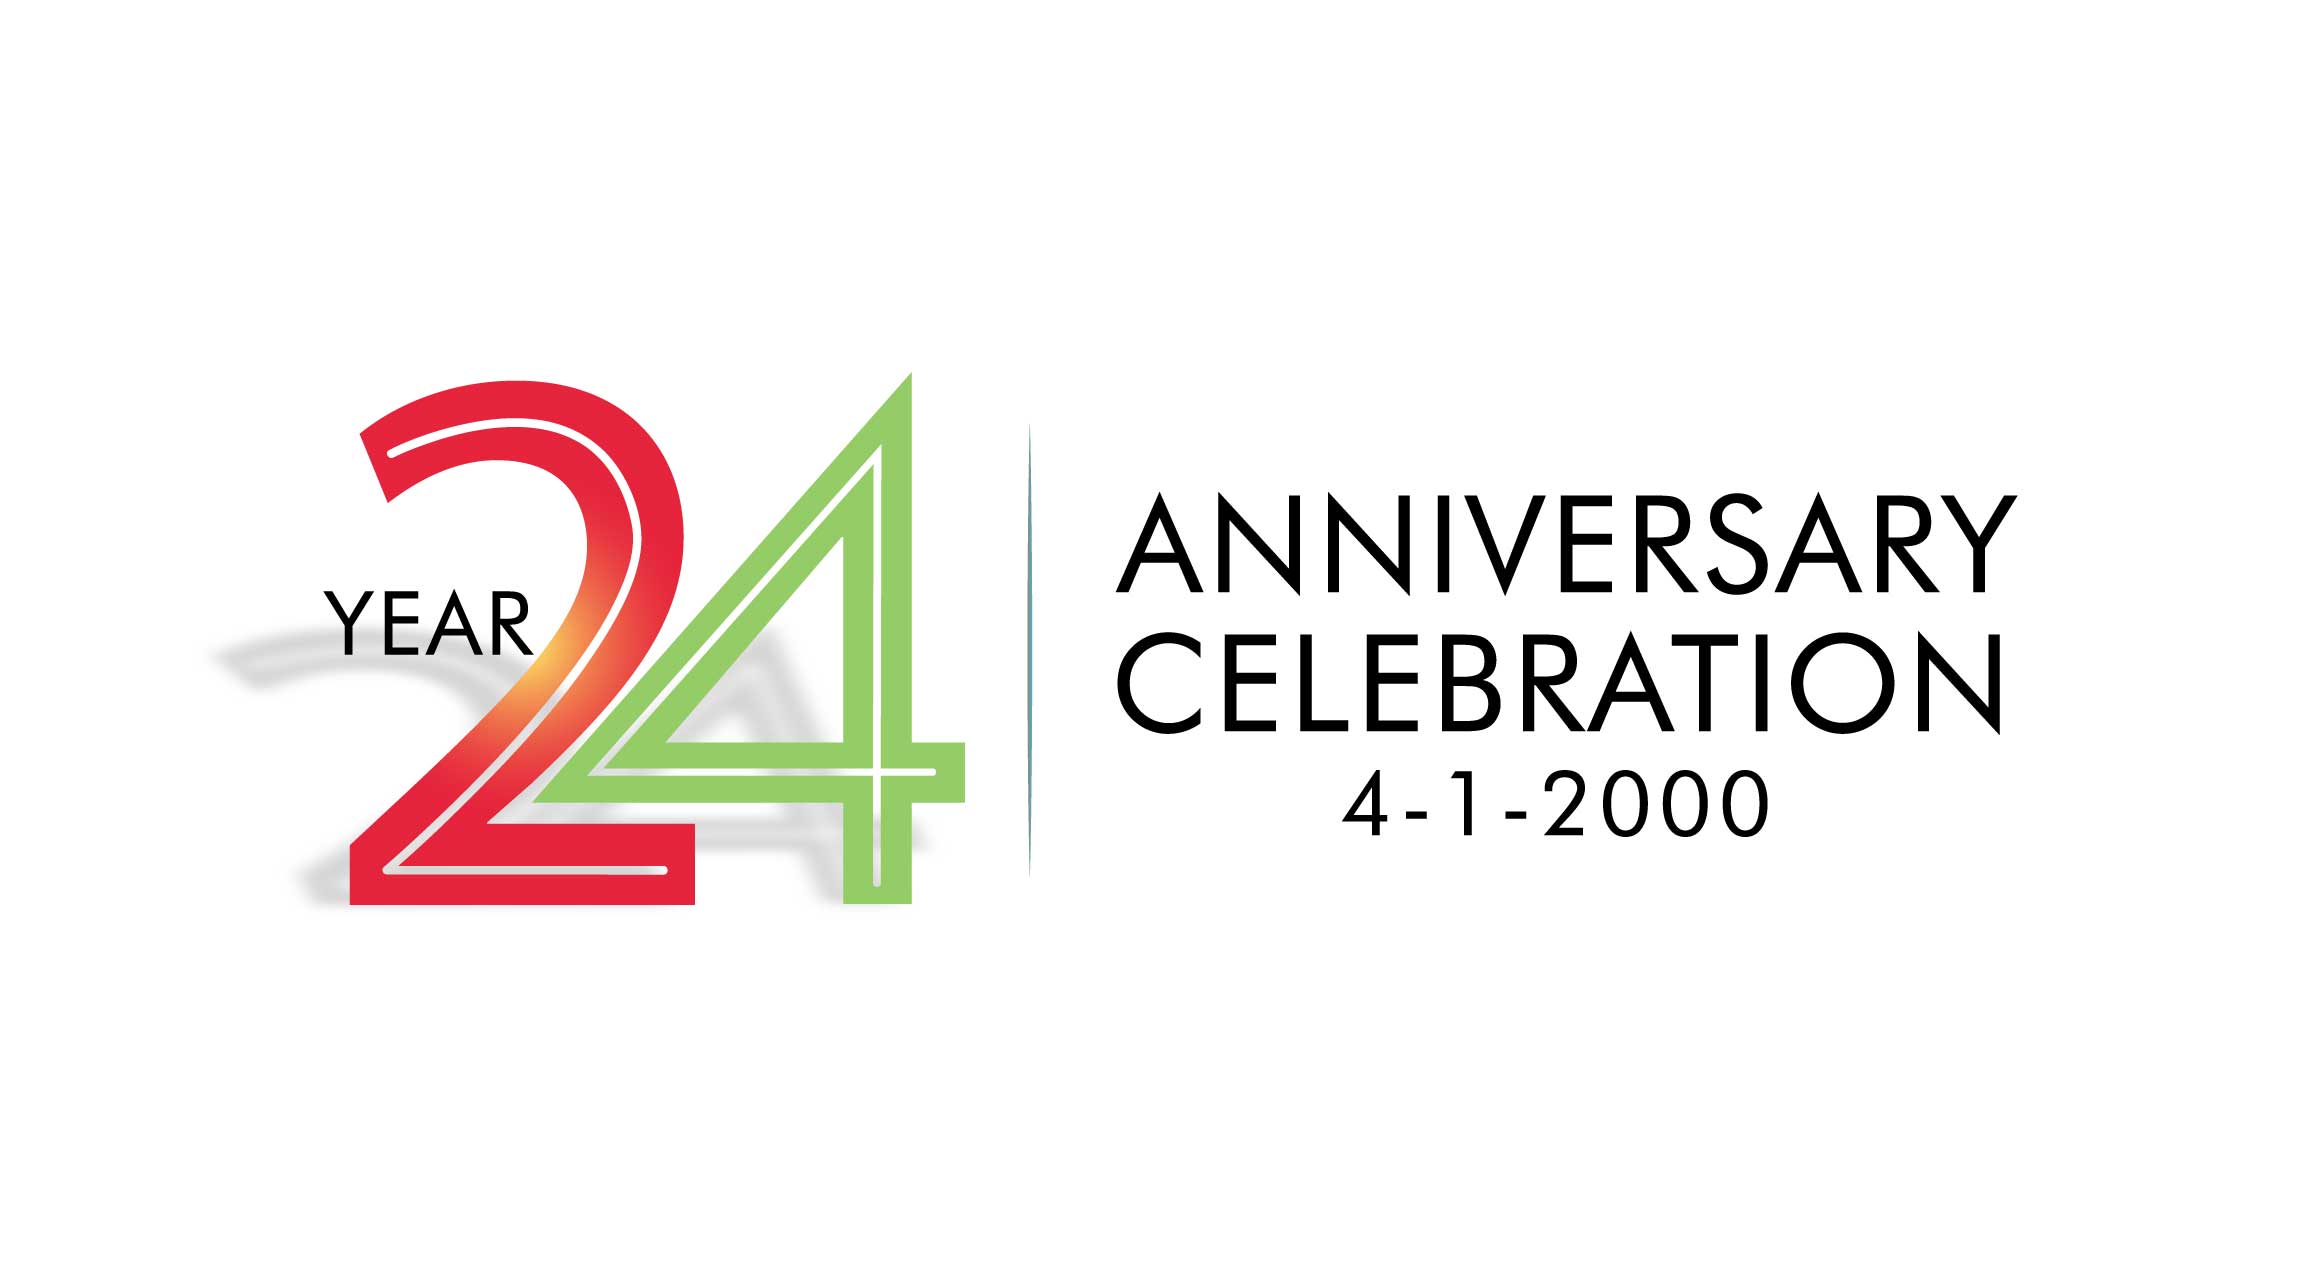 Carolina Creative - Celebrating 24 Years